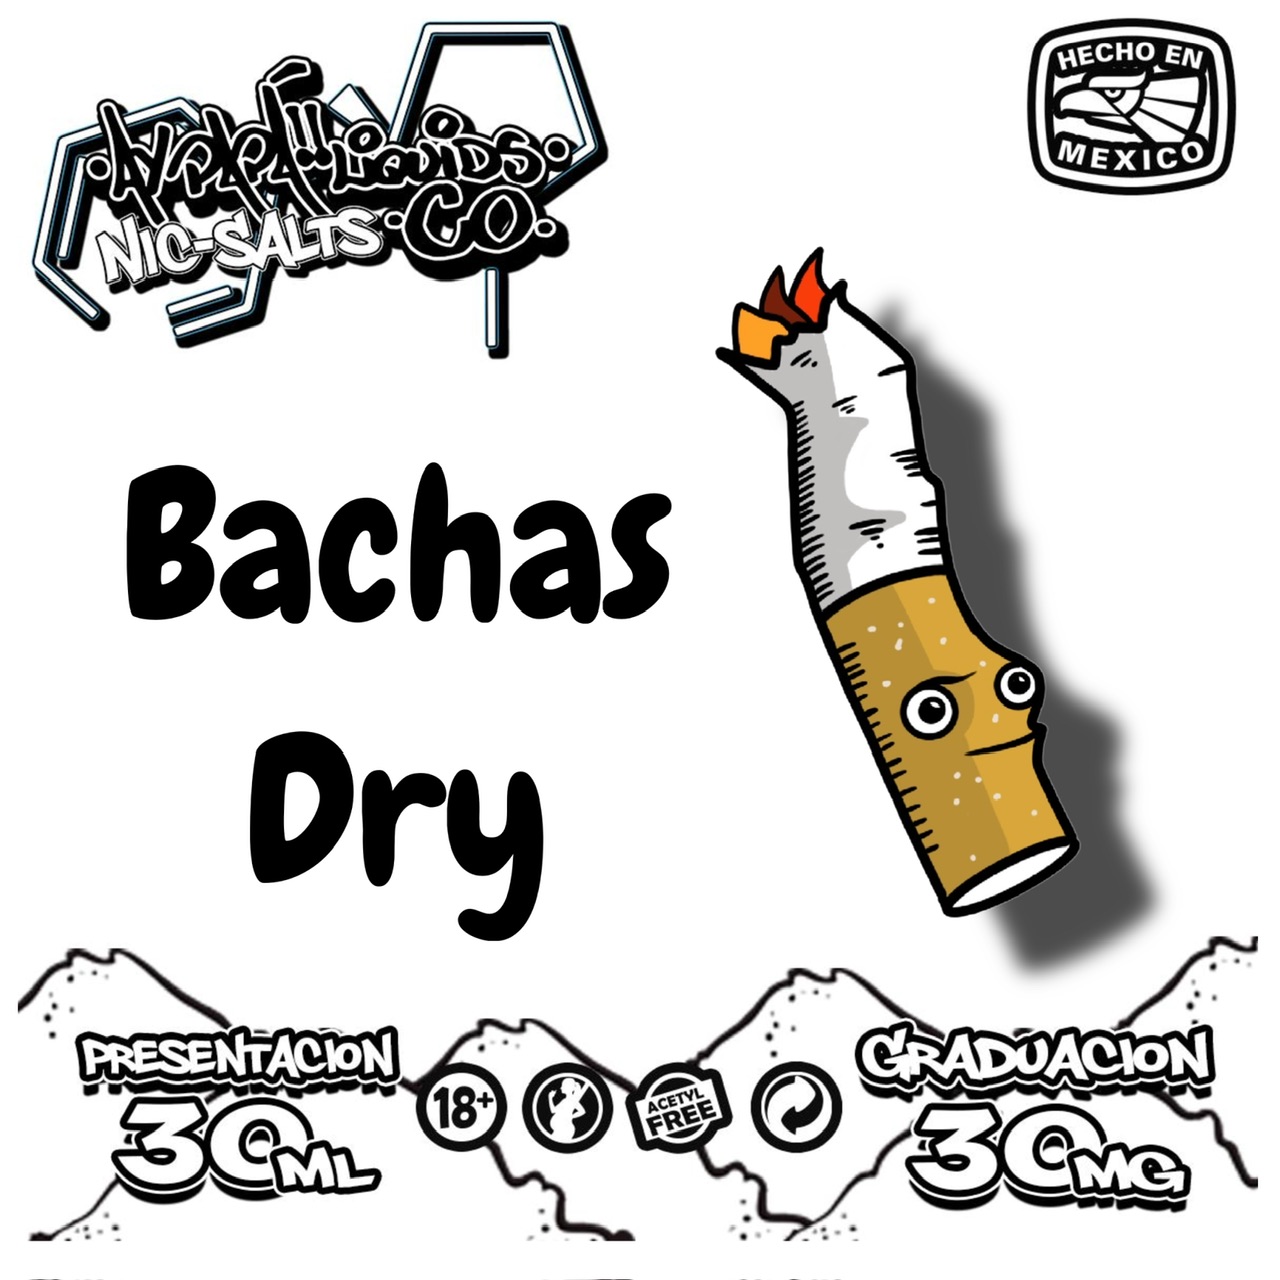 Bachas Dry Nicsalt